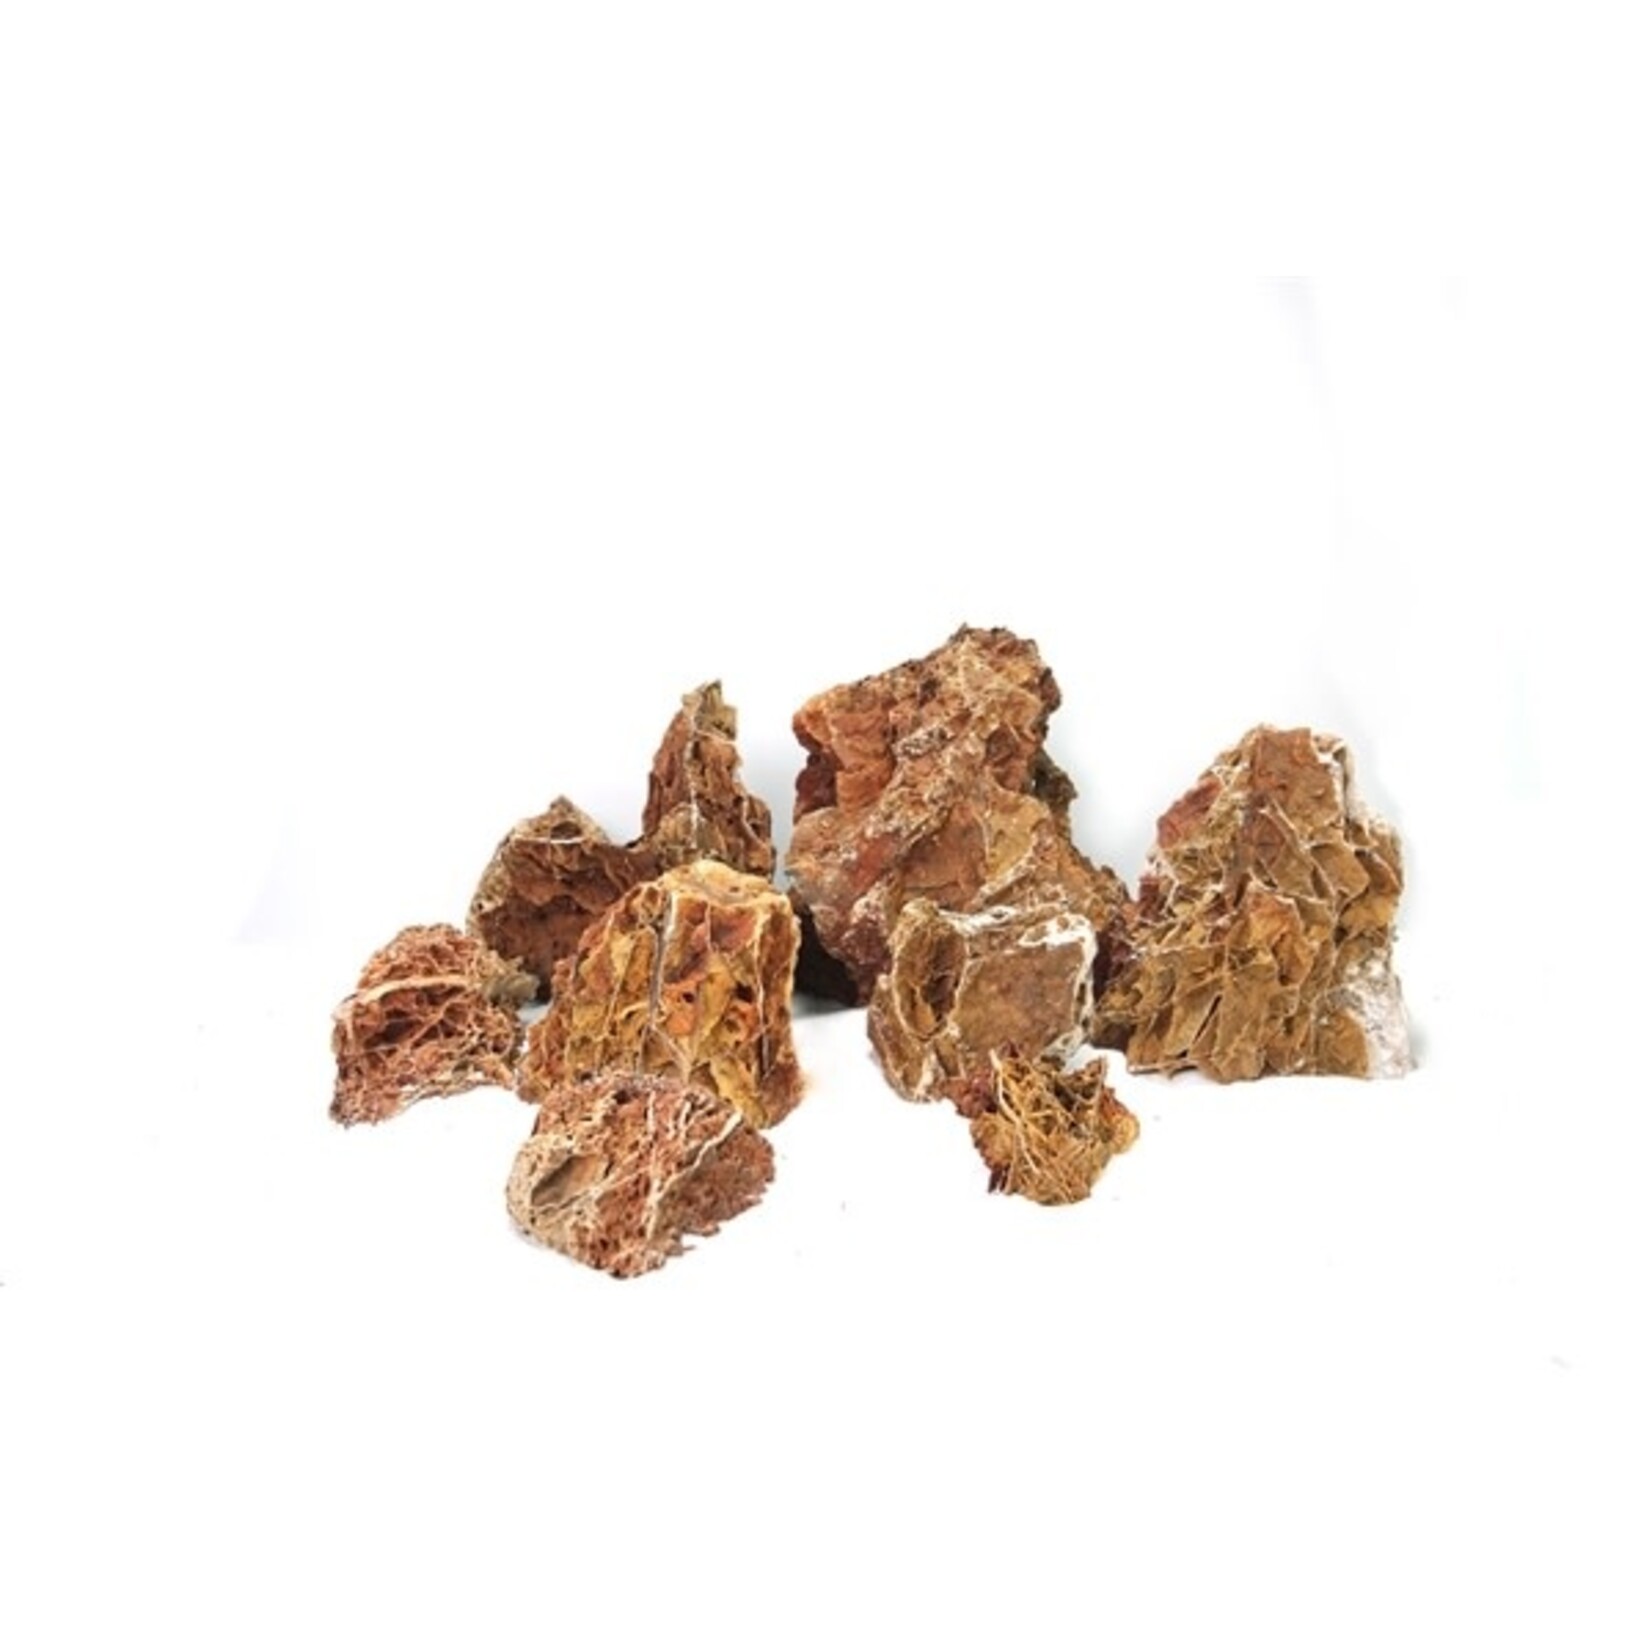 HS Aqua Maple leaf rock l (5 st) ca. 4.5-5 kg